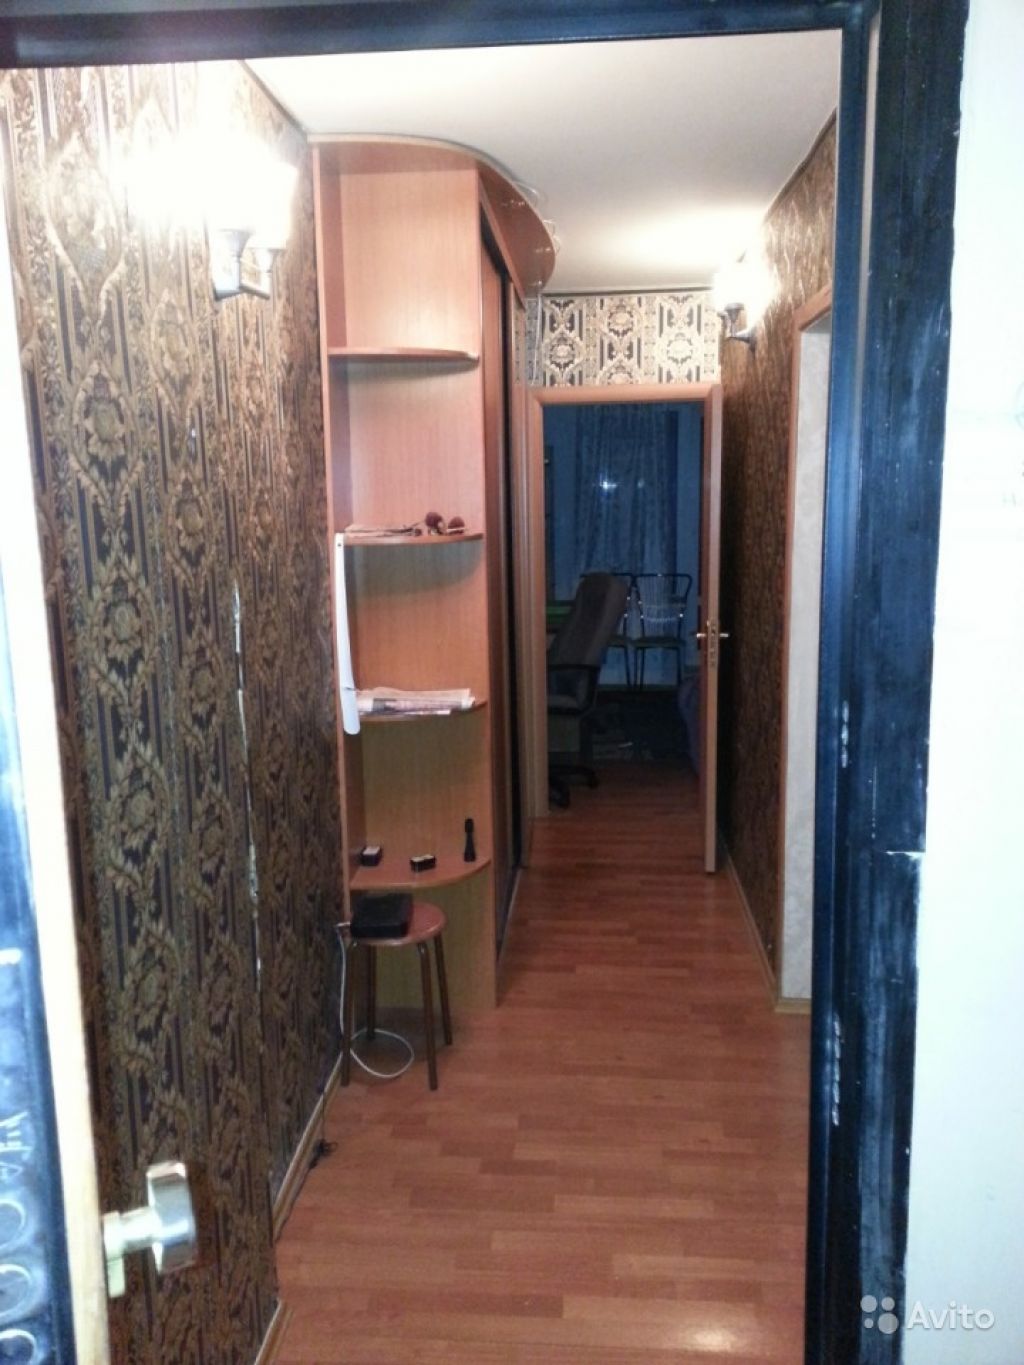 Сдам квартиру 3-к квартира 54 м² на 12 этаже 12-этажного панельного дома в Москве. Фото 1